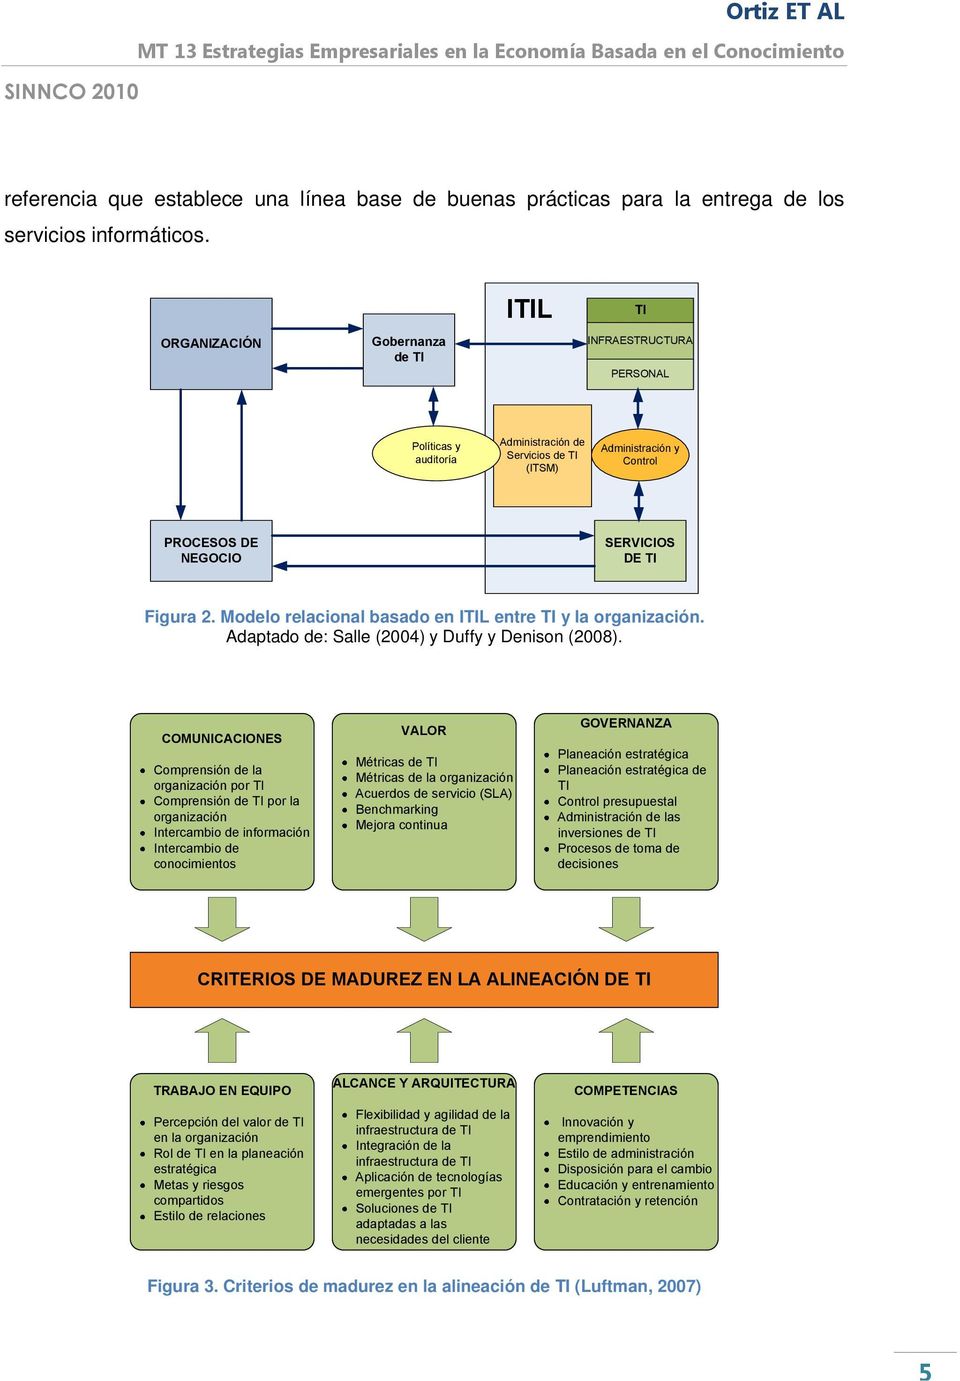 Modelo relacional basado en ITIL entre TI y la organización. Adaptado de: Salle (2004) y Duffy y Denison (2008).